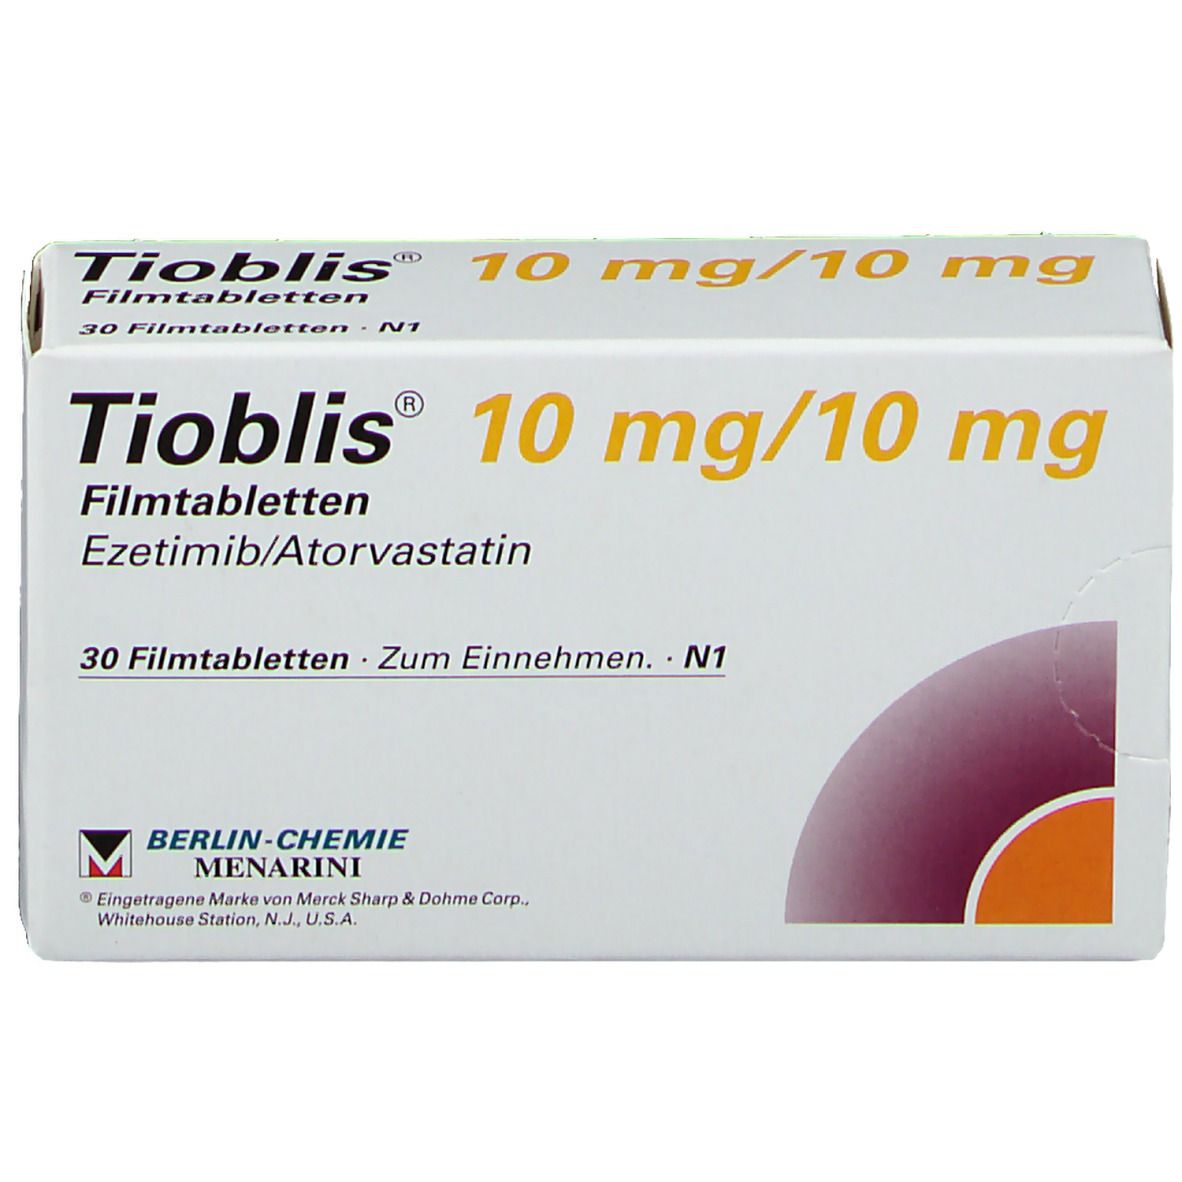 Tioblis® 10 mg/10 mg